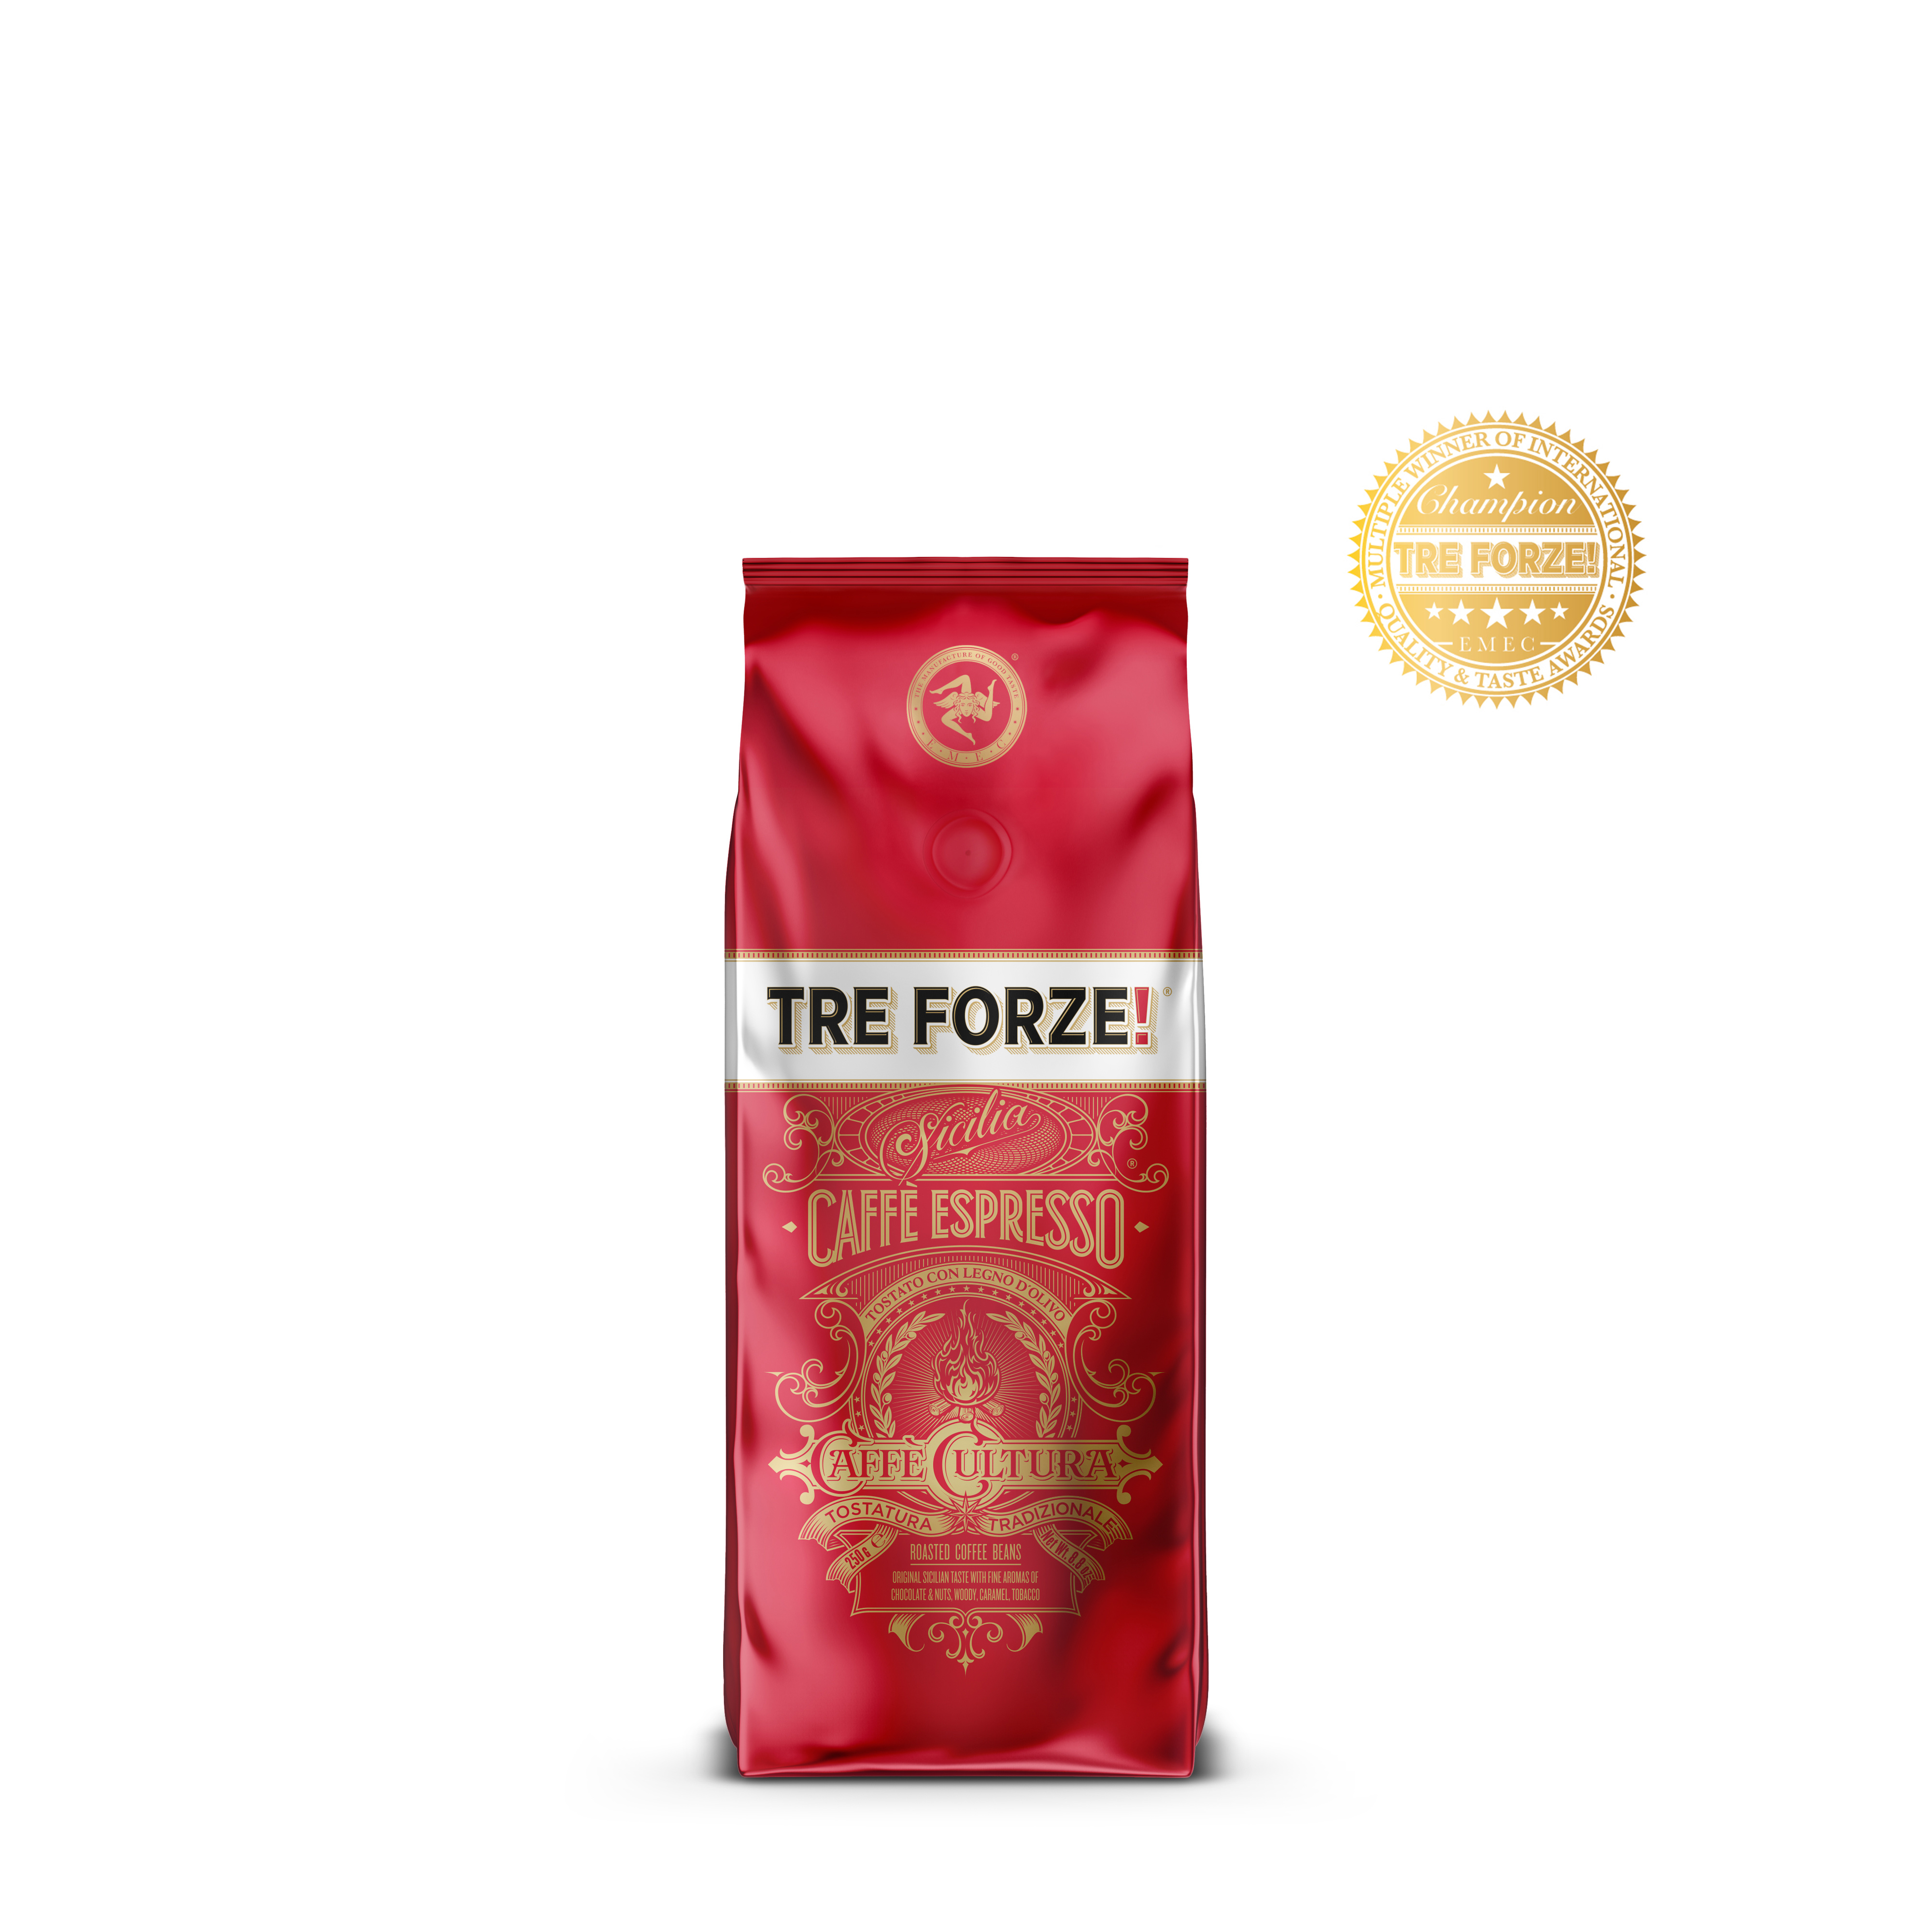 TRE FORZE! - Caffè Espresso - 250g - Bag